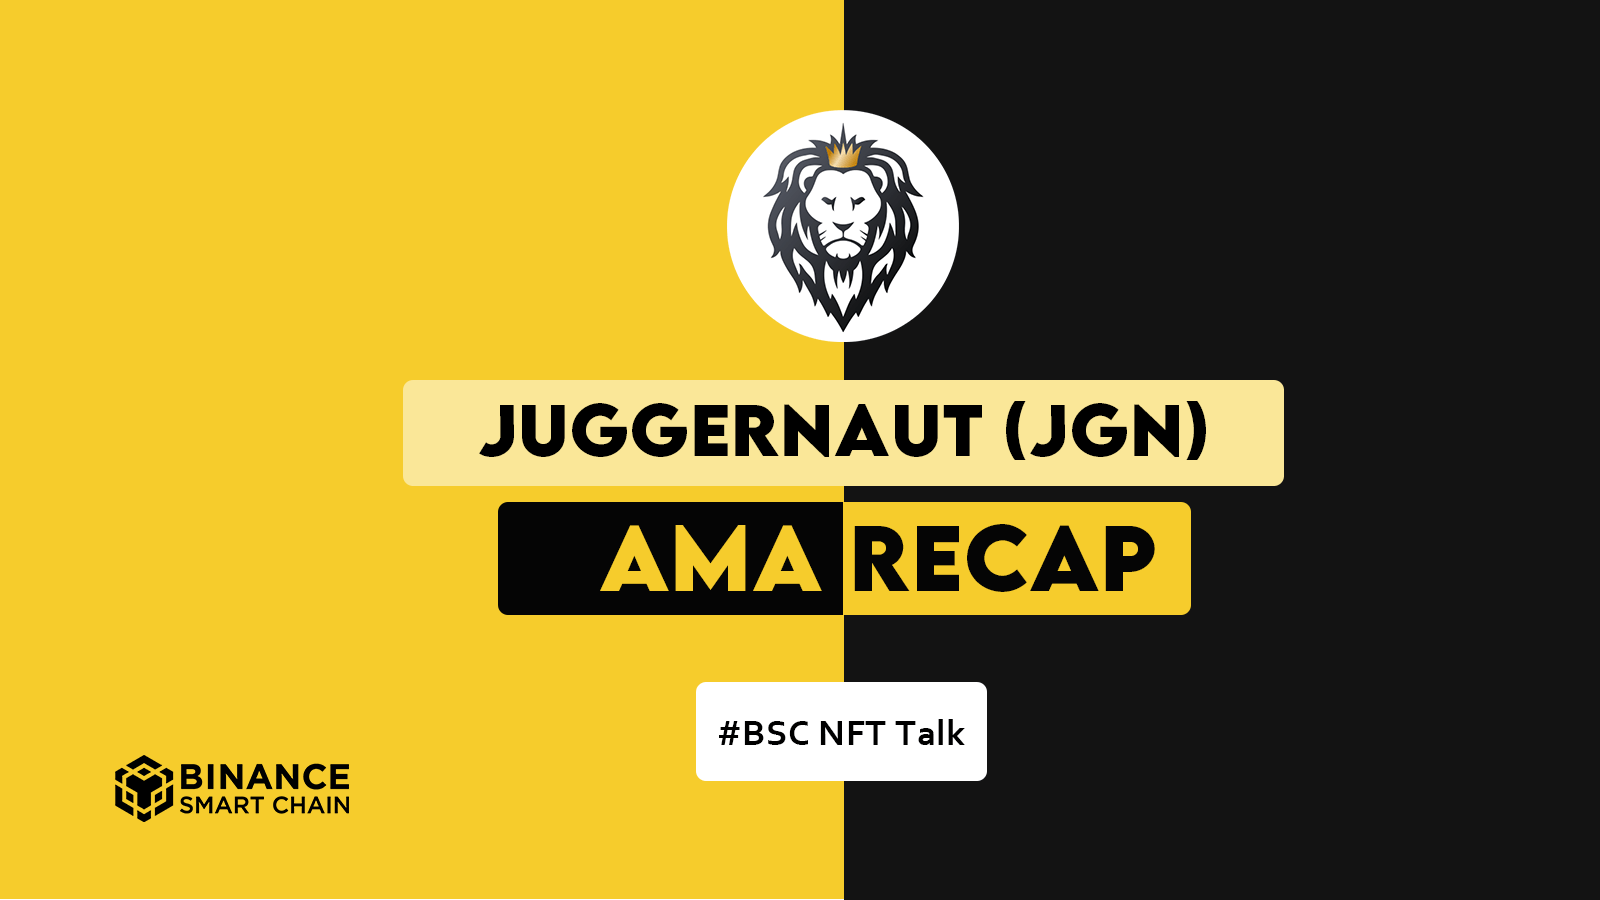 Juggernaut AMA Recap: BSC NFT Talk